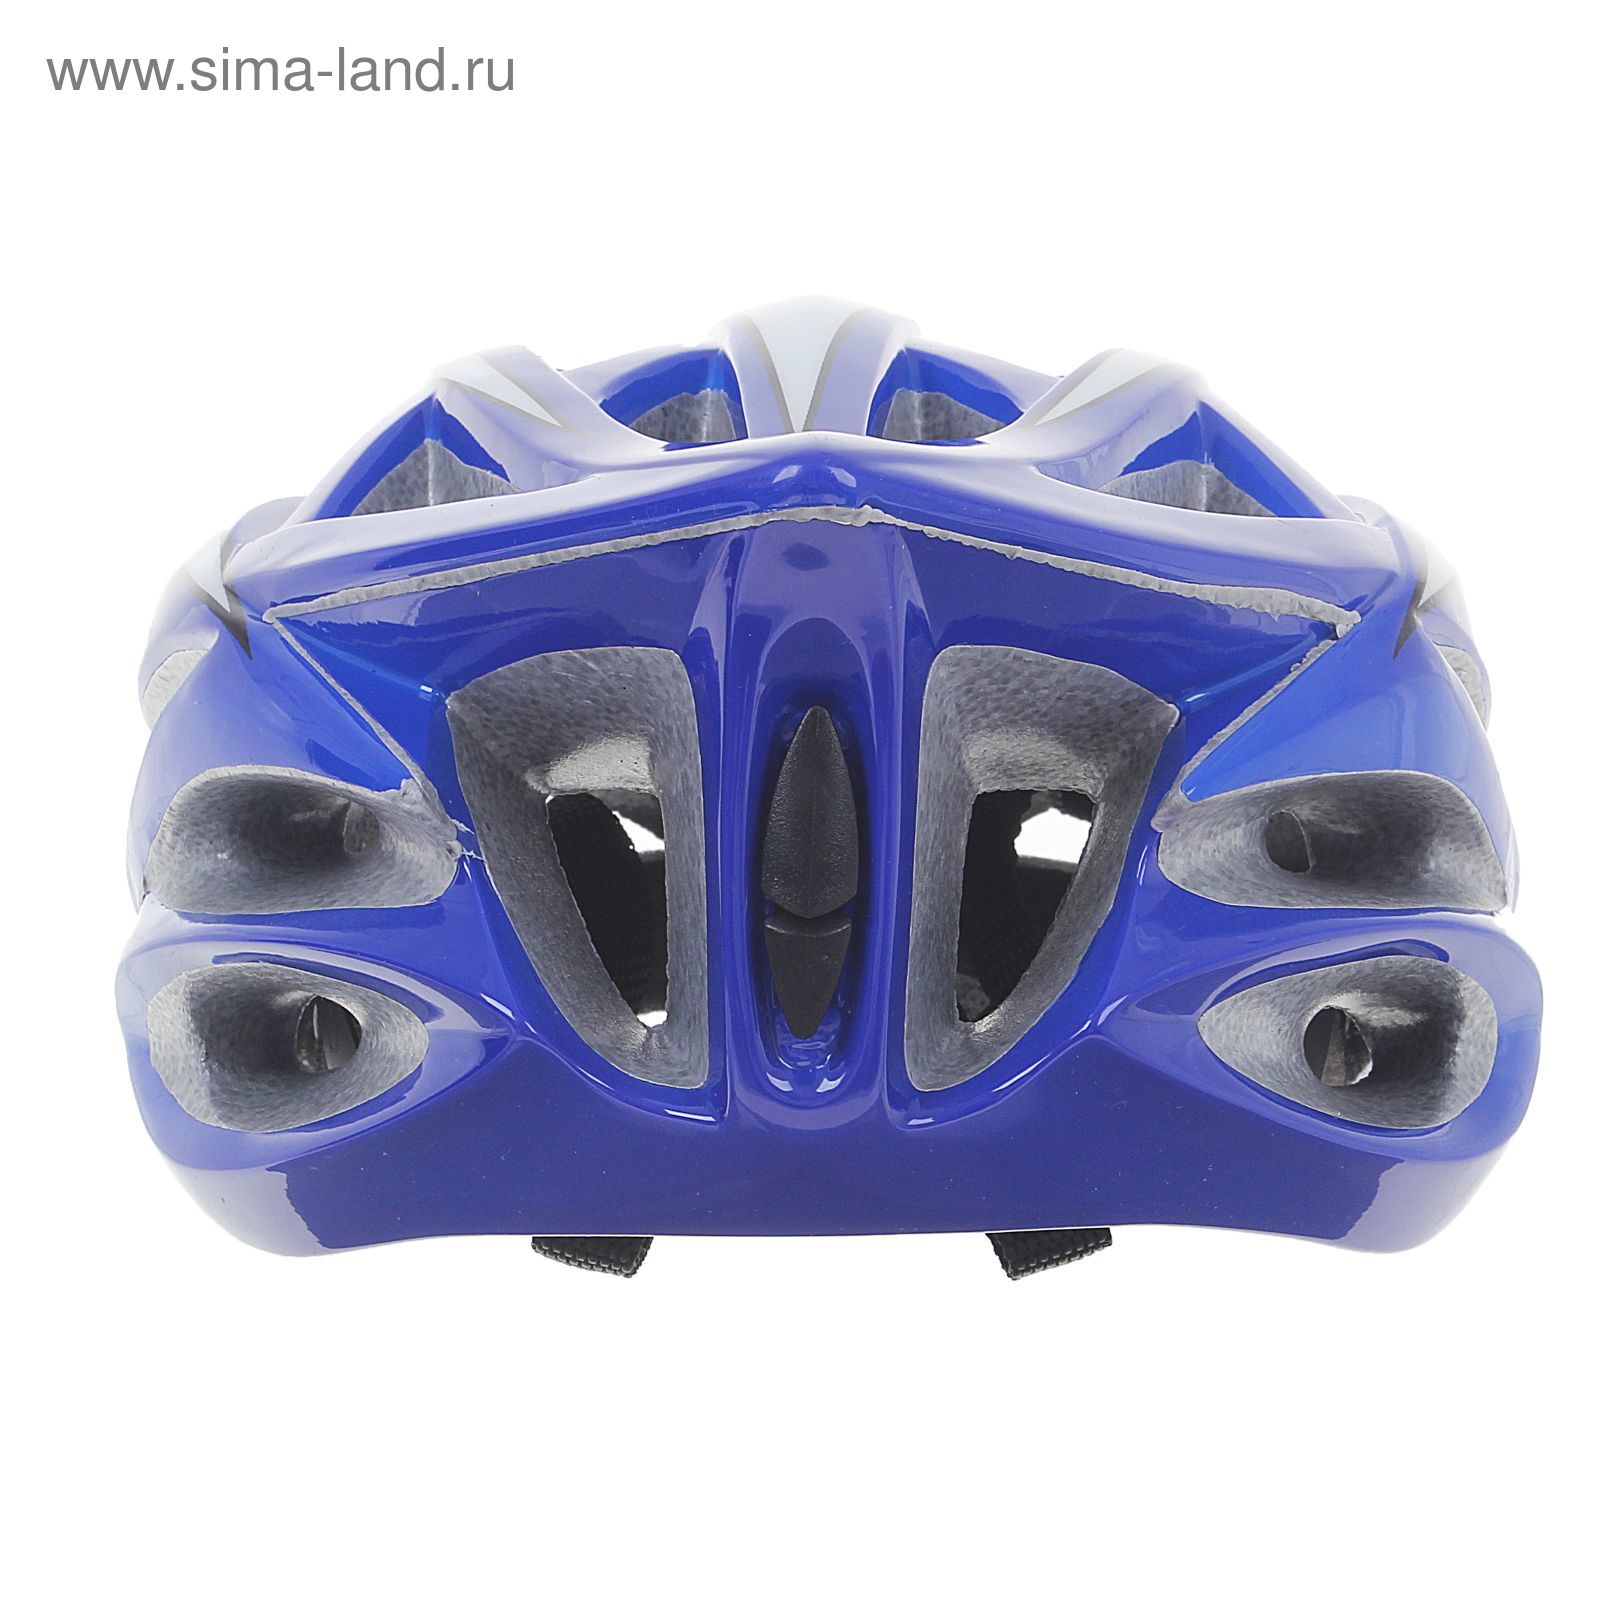 Шлем велосипедиста взрослый ОТ-325, сине-белый, диаметр 54 см